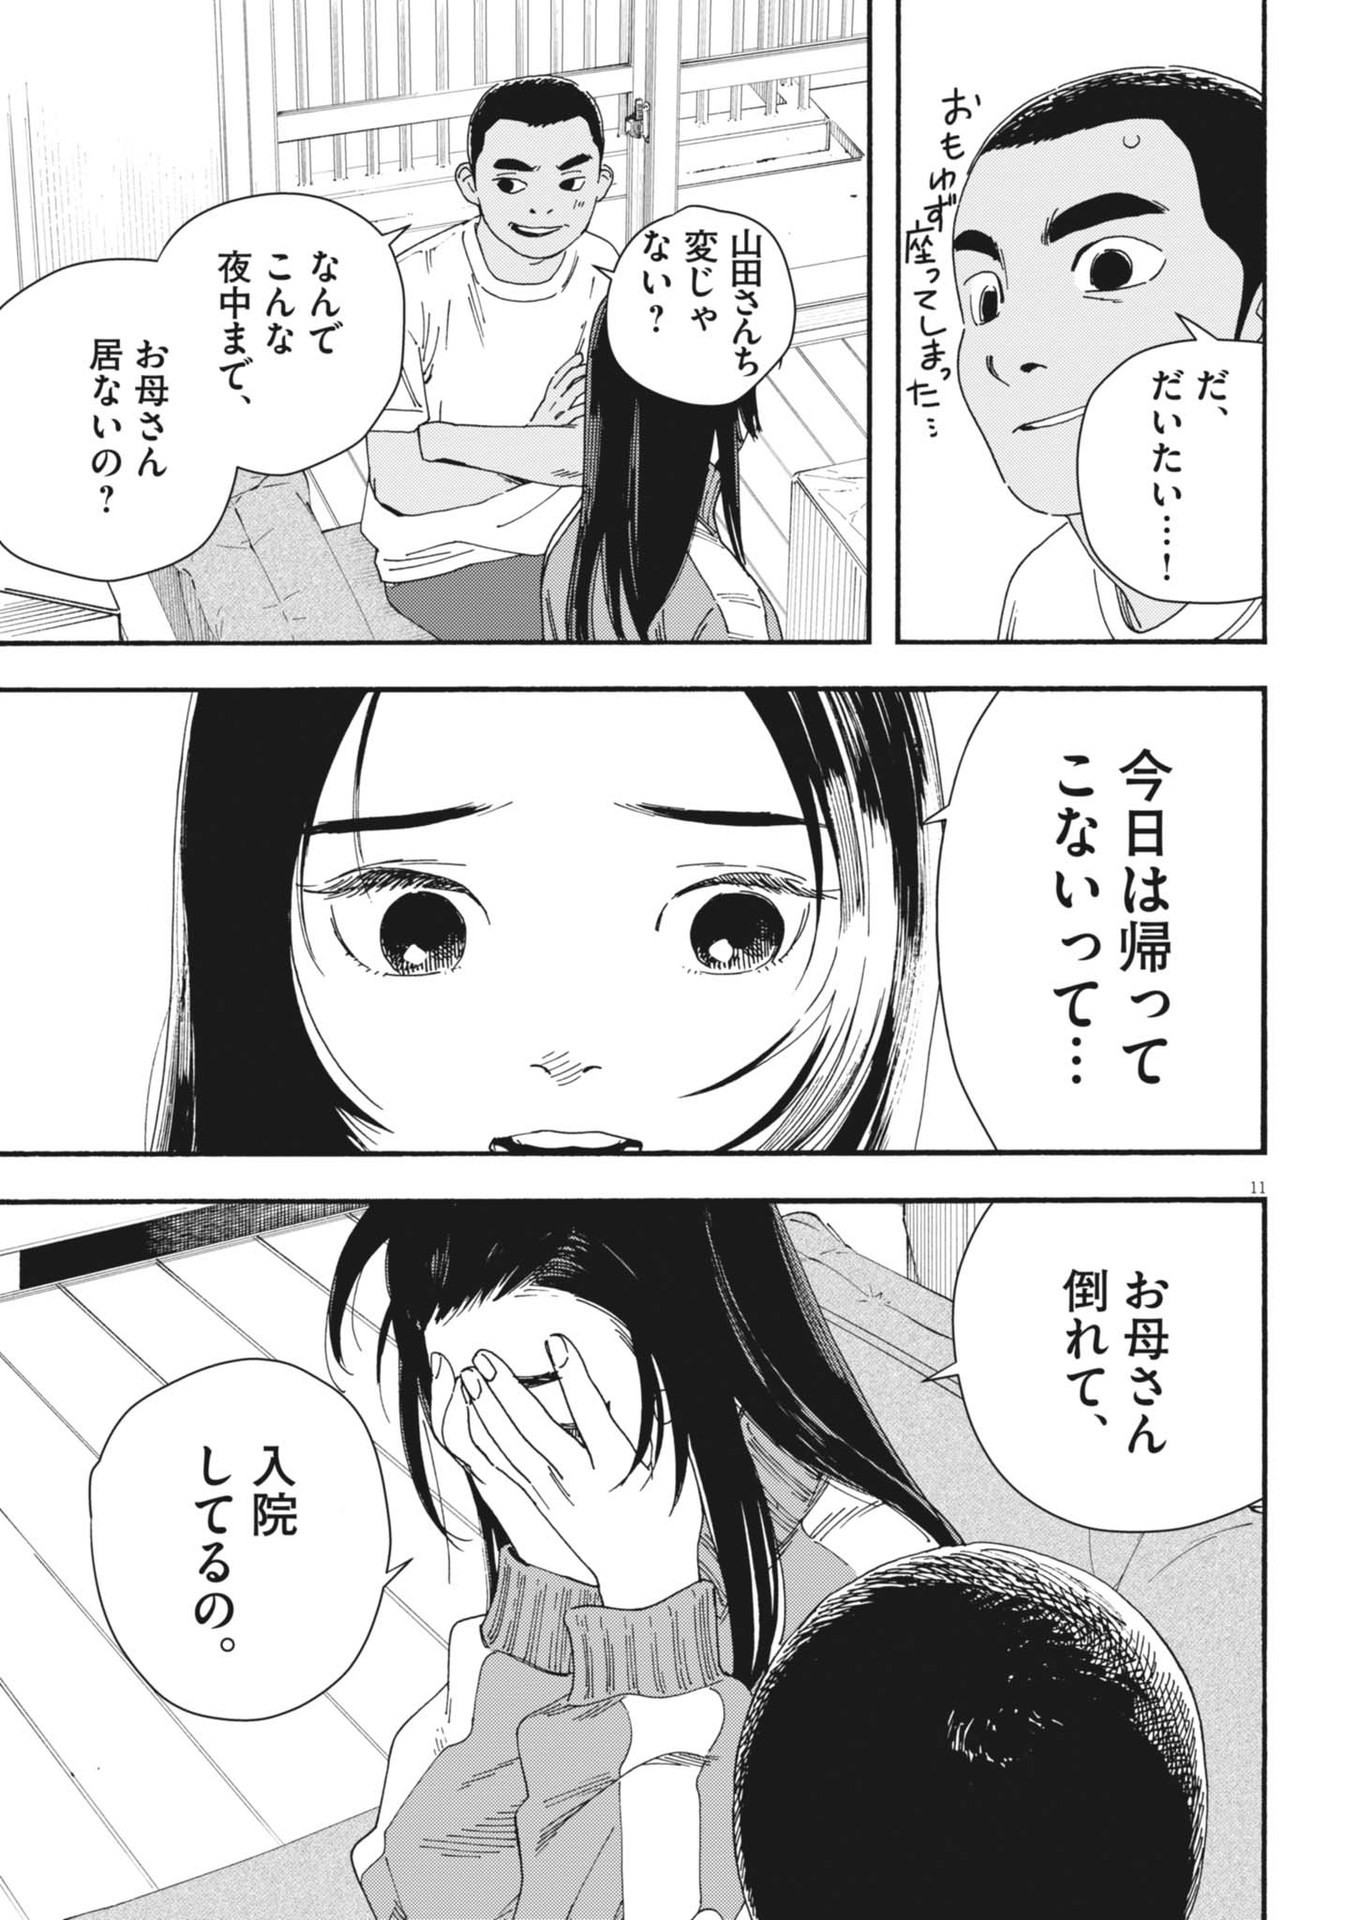 Hoshino-kun, Shitagatte! - Chapter 9 - Page 11